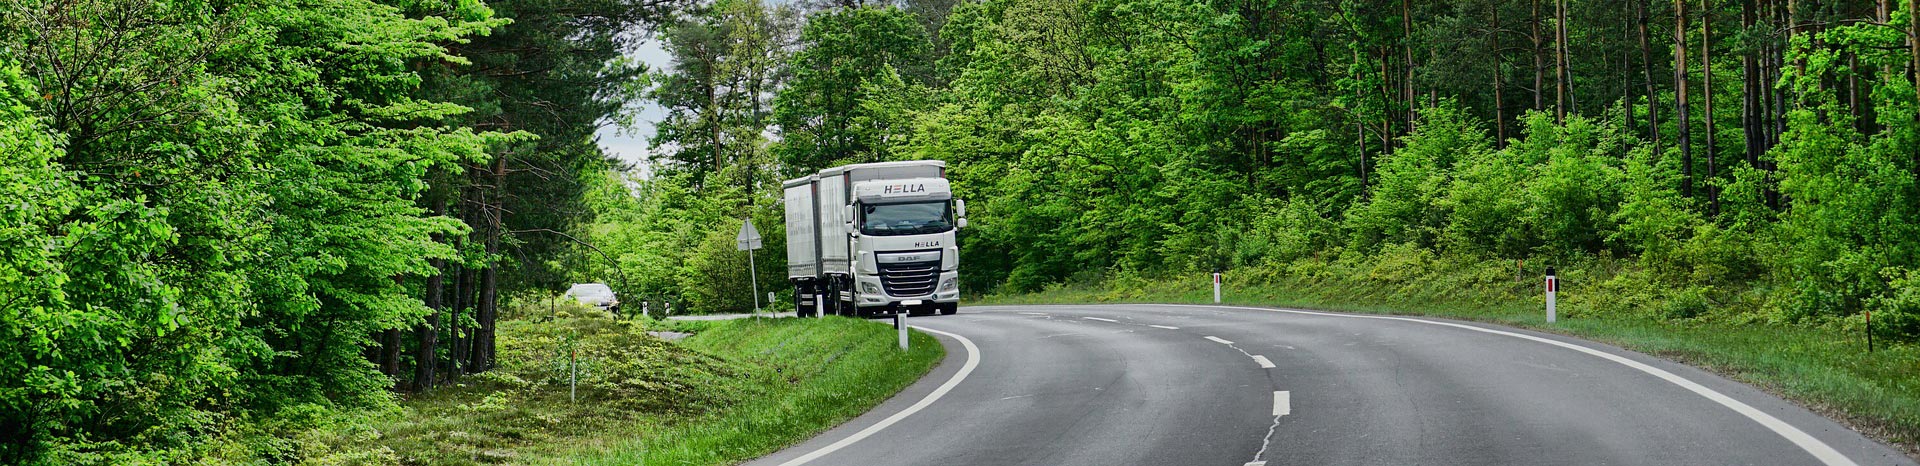 Terugdringen ongevallen vrachtwagens door technologie | LetselPro